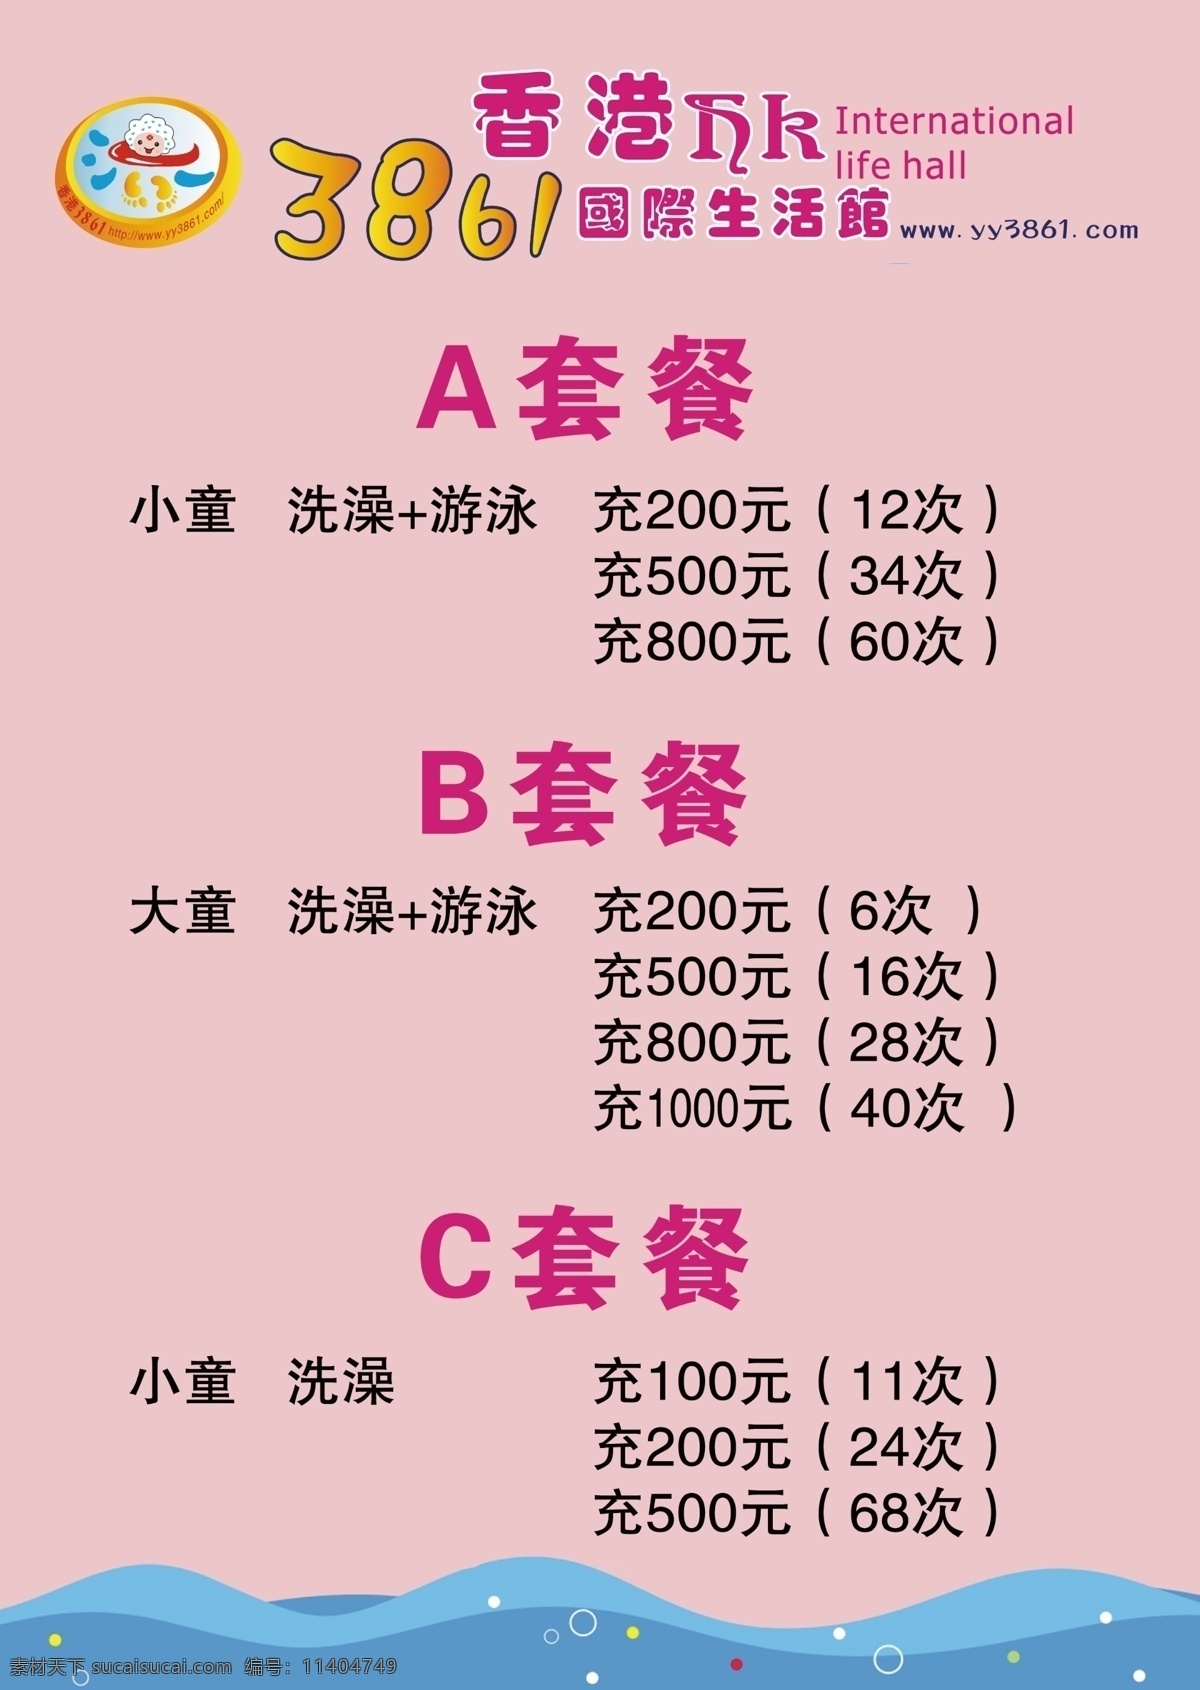 香港 婴儿 游泳 套餐价格 香港3681 卡通宝宝 婴儿生活 dm宣传单 广告设计模板 源文件